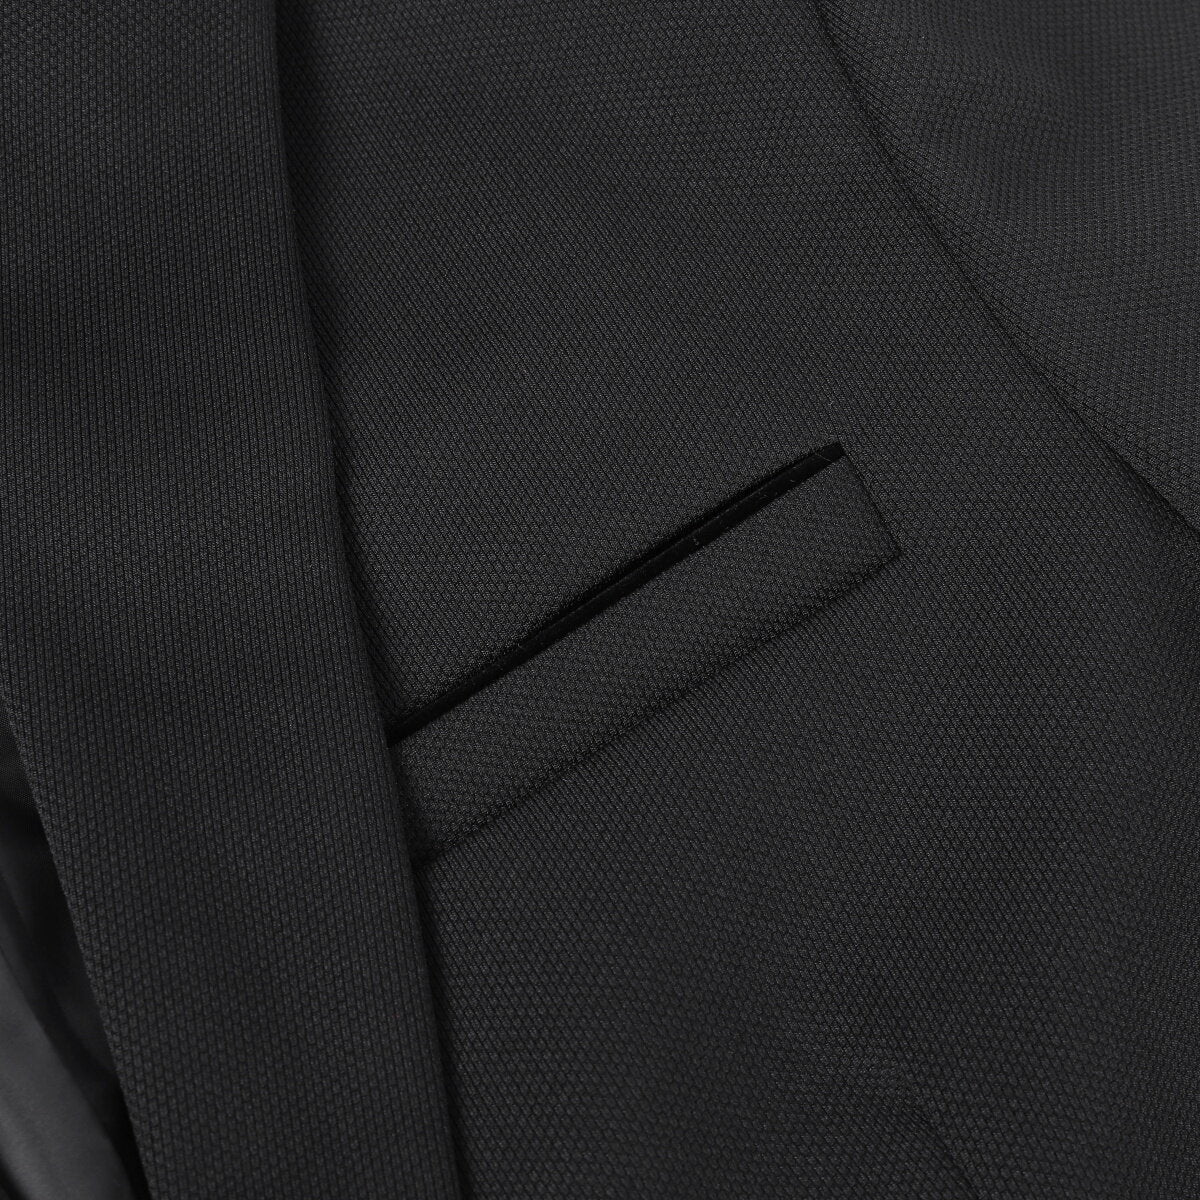 Men's Suit Jacket Slim Fit Coat Business Daily Blazer Black